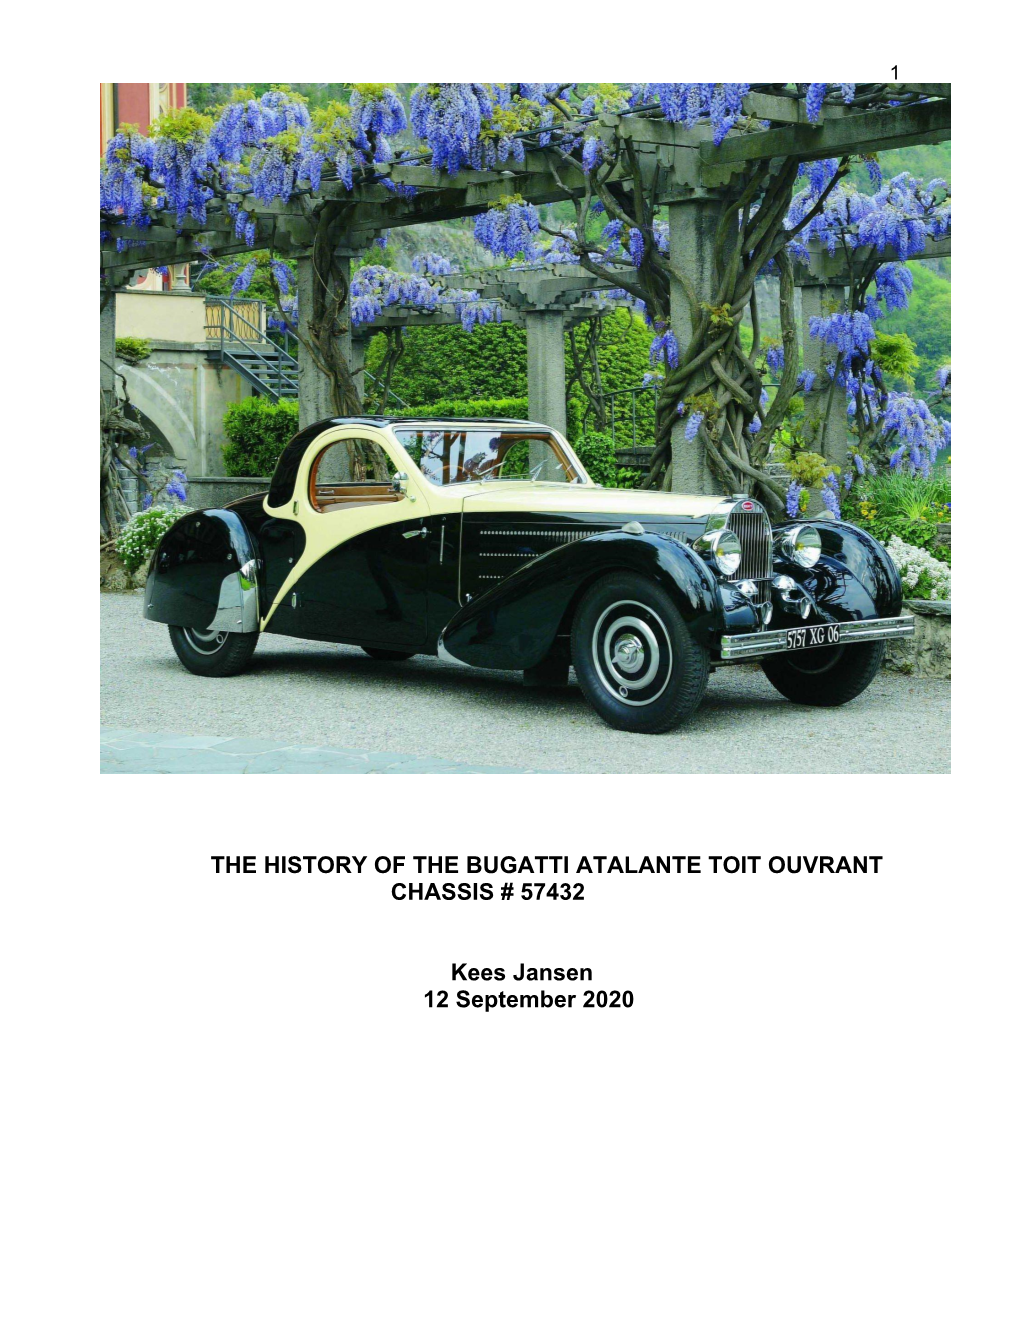 Geschiedenis of Bugatti 57432